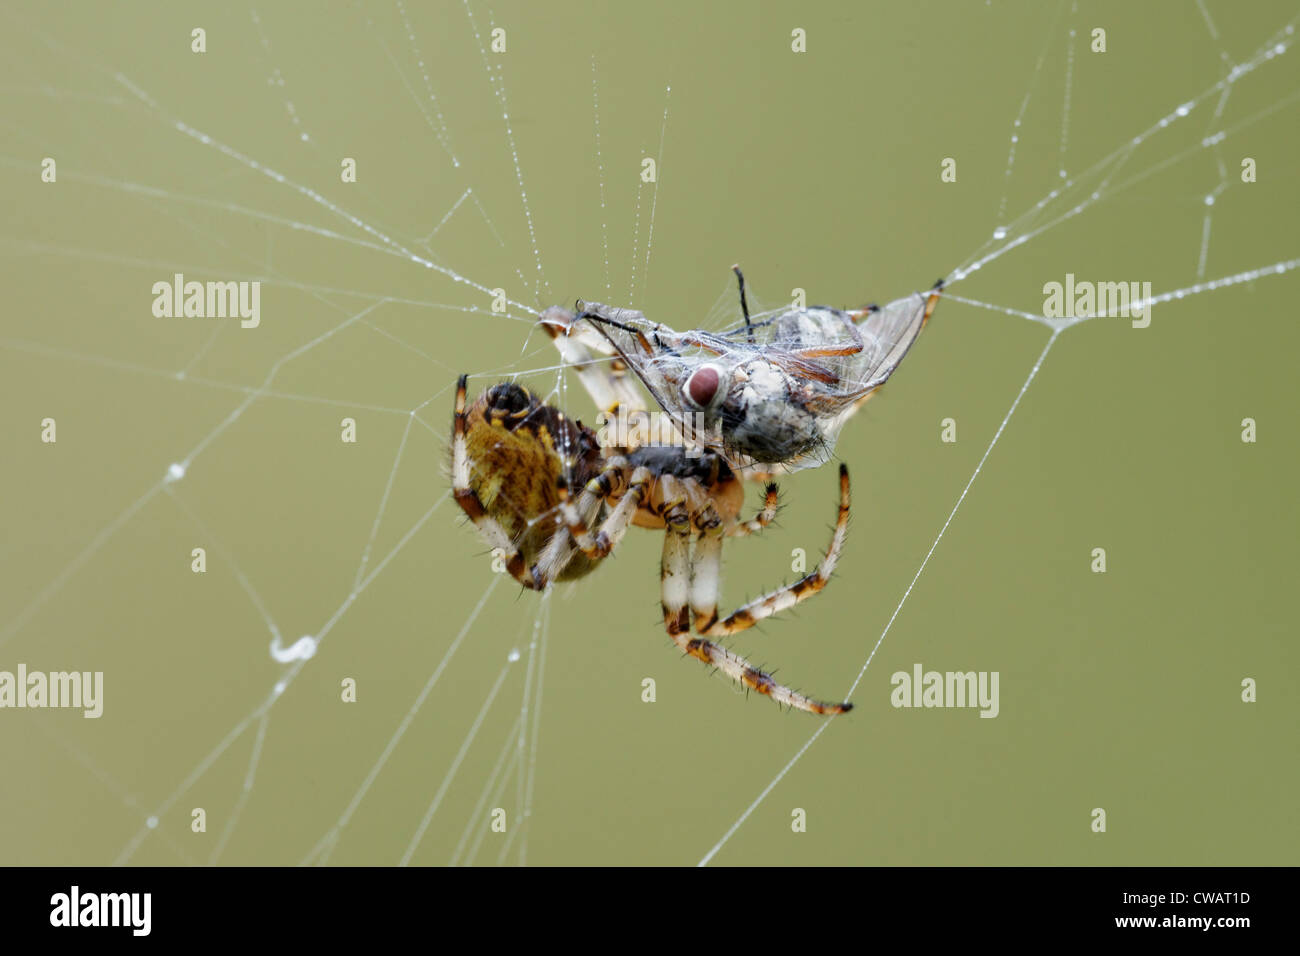 Giardino europeo spider (Araneus diadematus) preparare per consumare una vittima Foto Stock